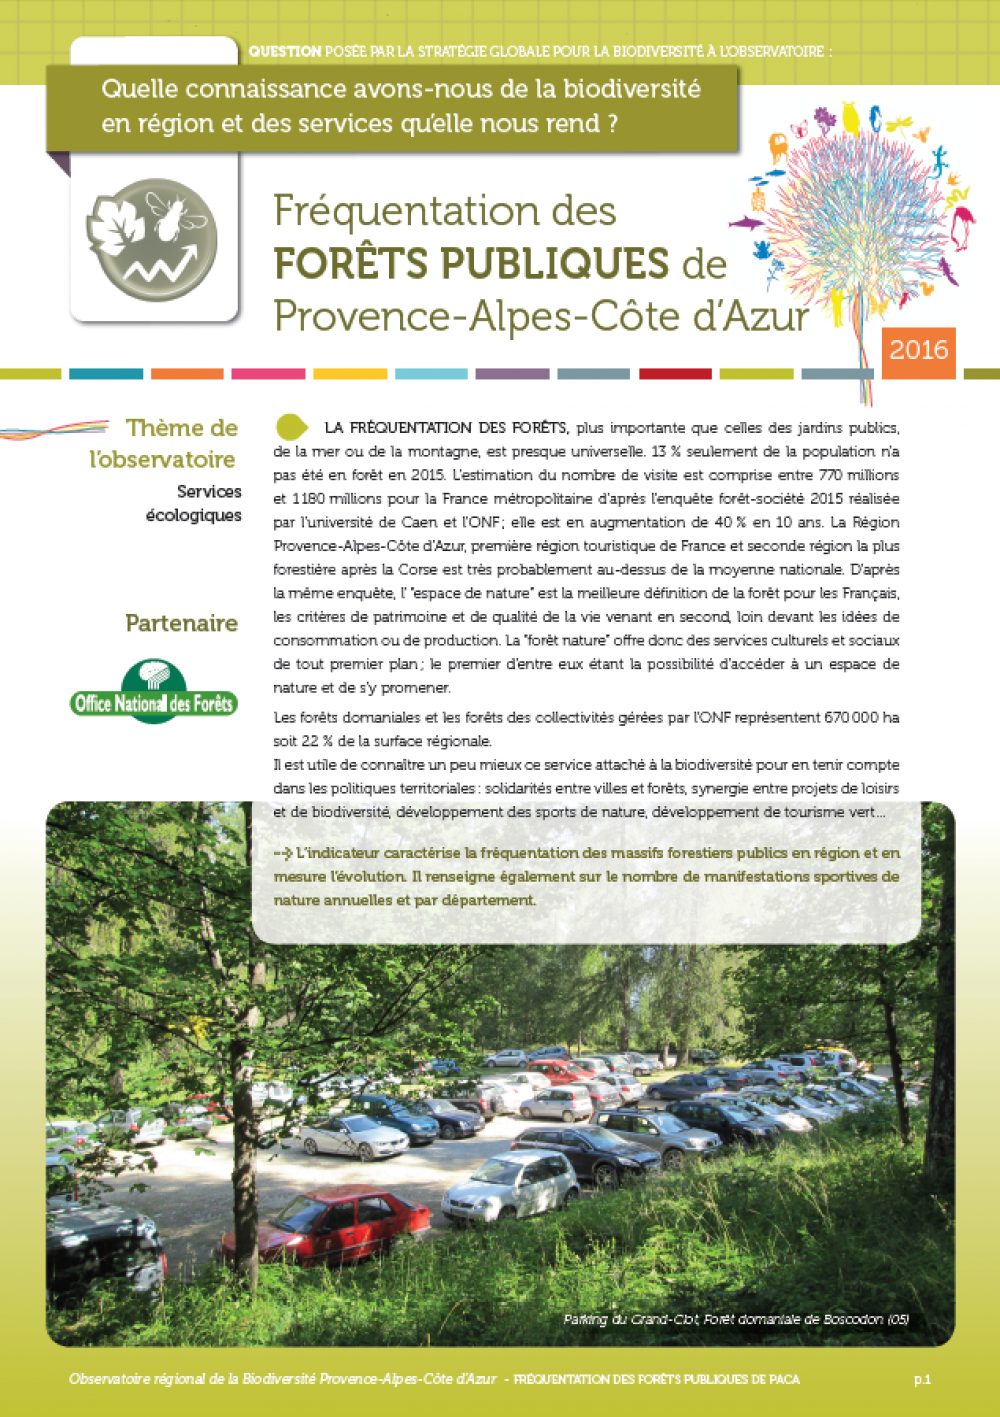 Fréquentation des forêts publiques de Provence-Alpes-Côte d’Azur